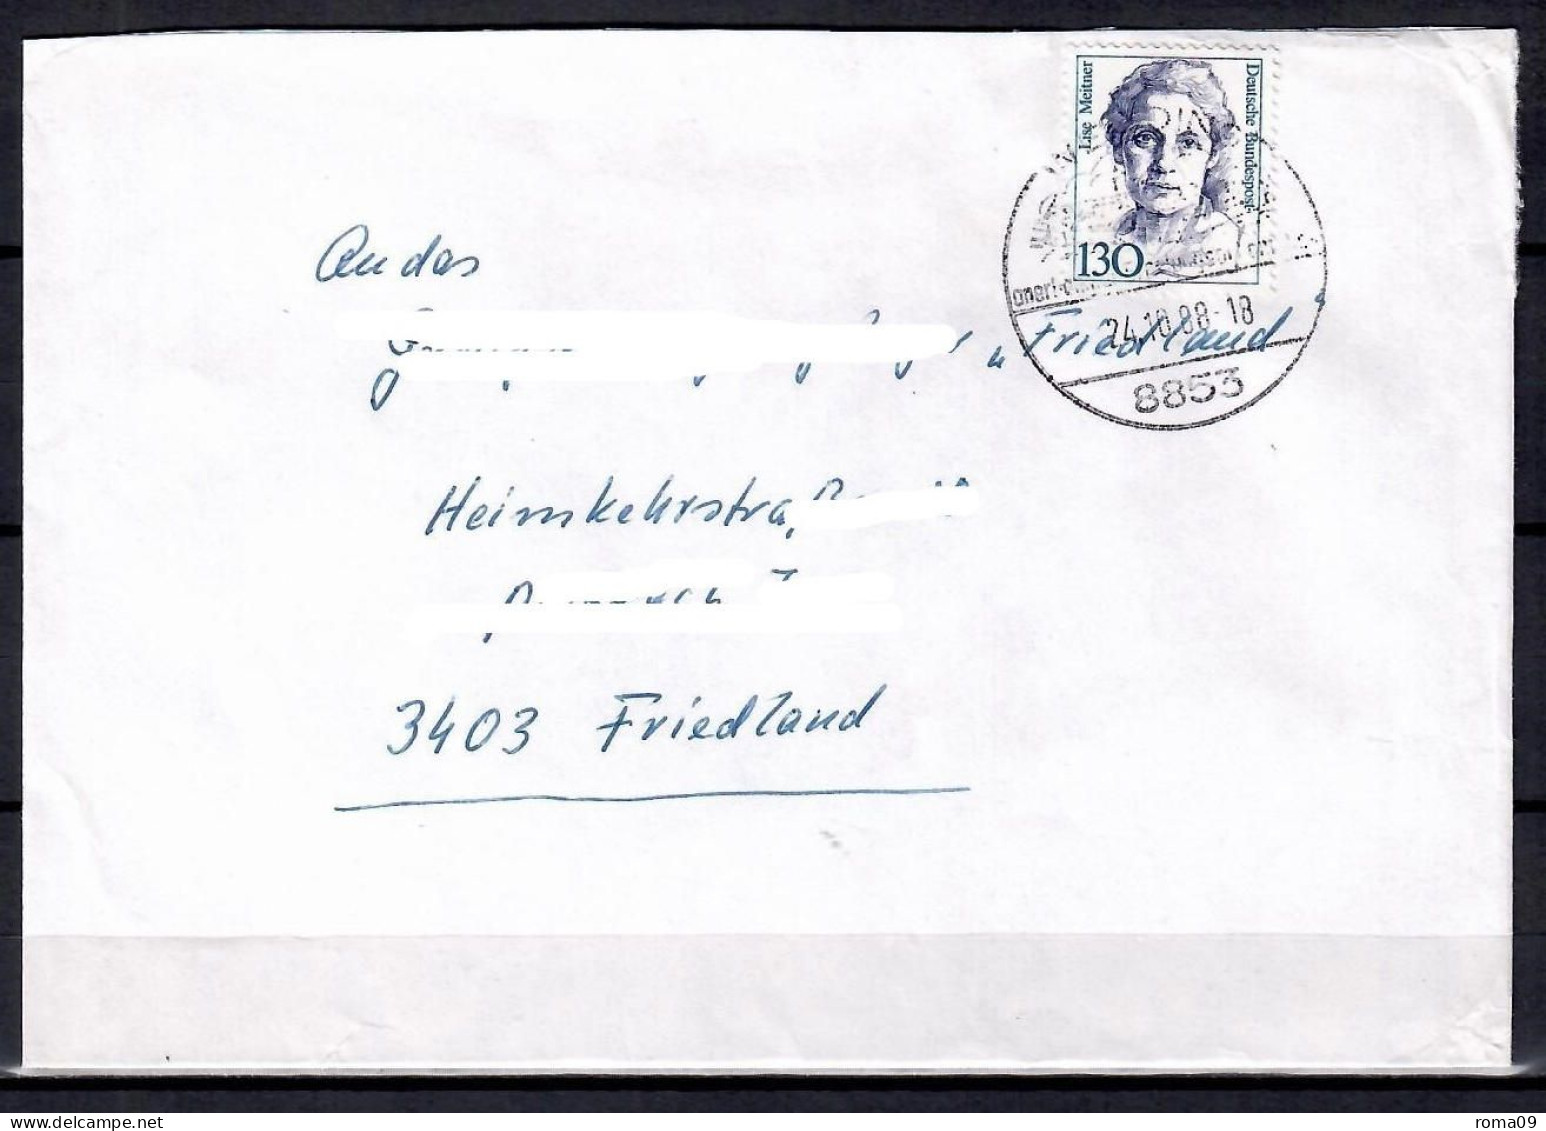 MiNr. 1366; Frauen: Lise Meitner, Auf Portoger. Brief Von Wemding Nach Friedland; B-1399 - Lettres & Documents